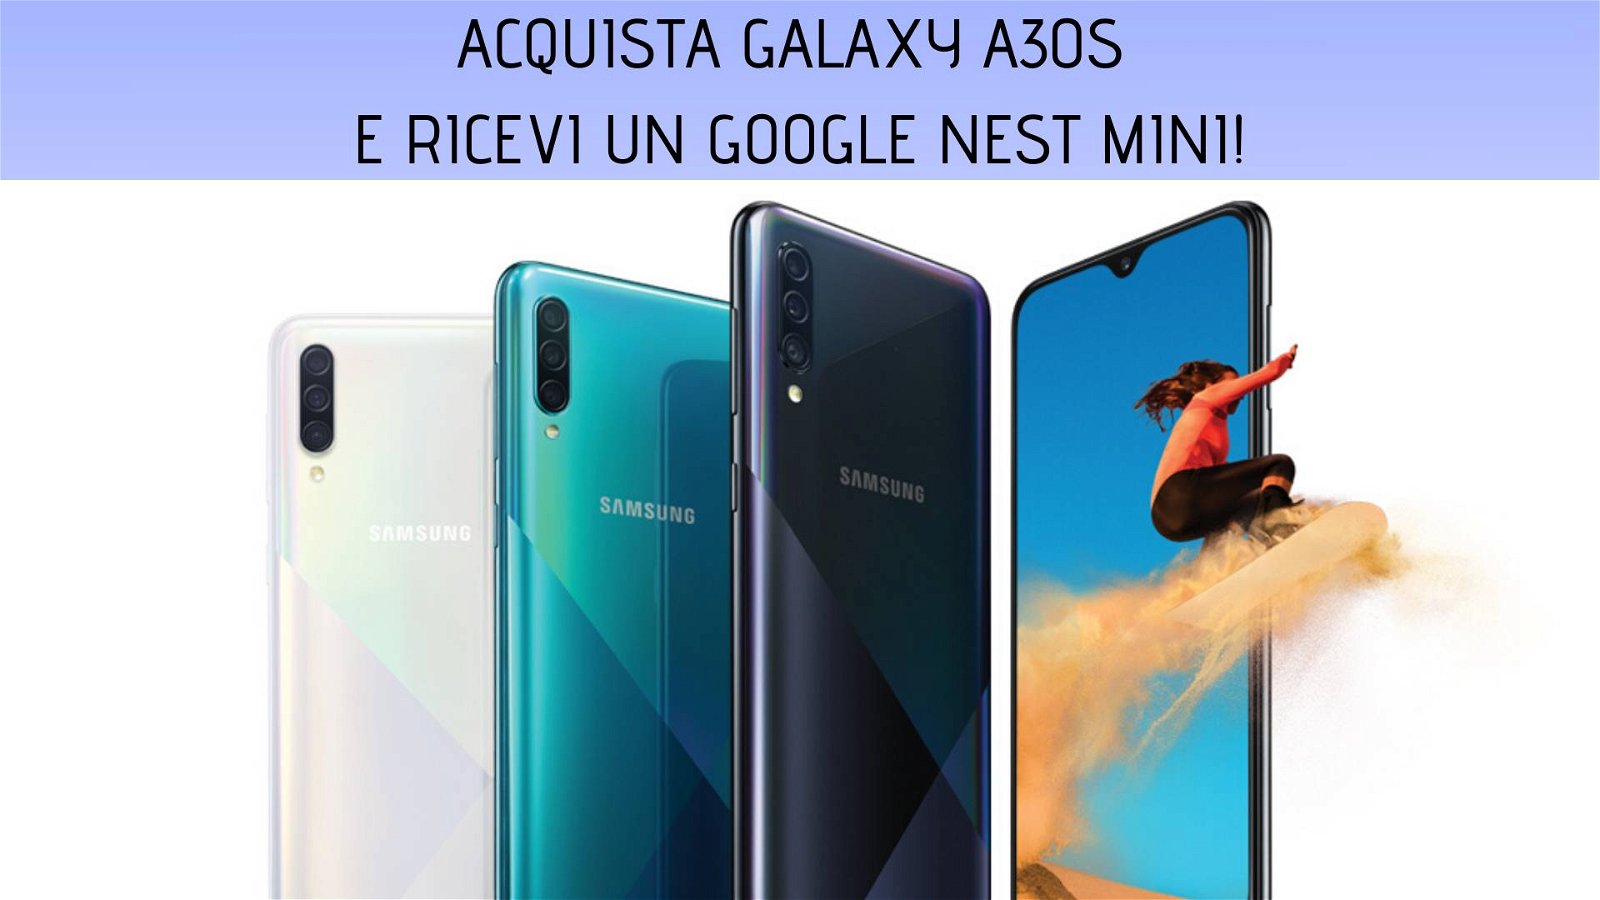 Immagine di Galaxy A30s, miglior prezzo e Google Nest mini in regalo da Unieuro!